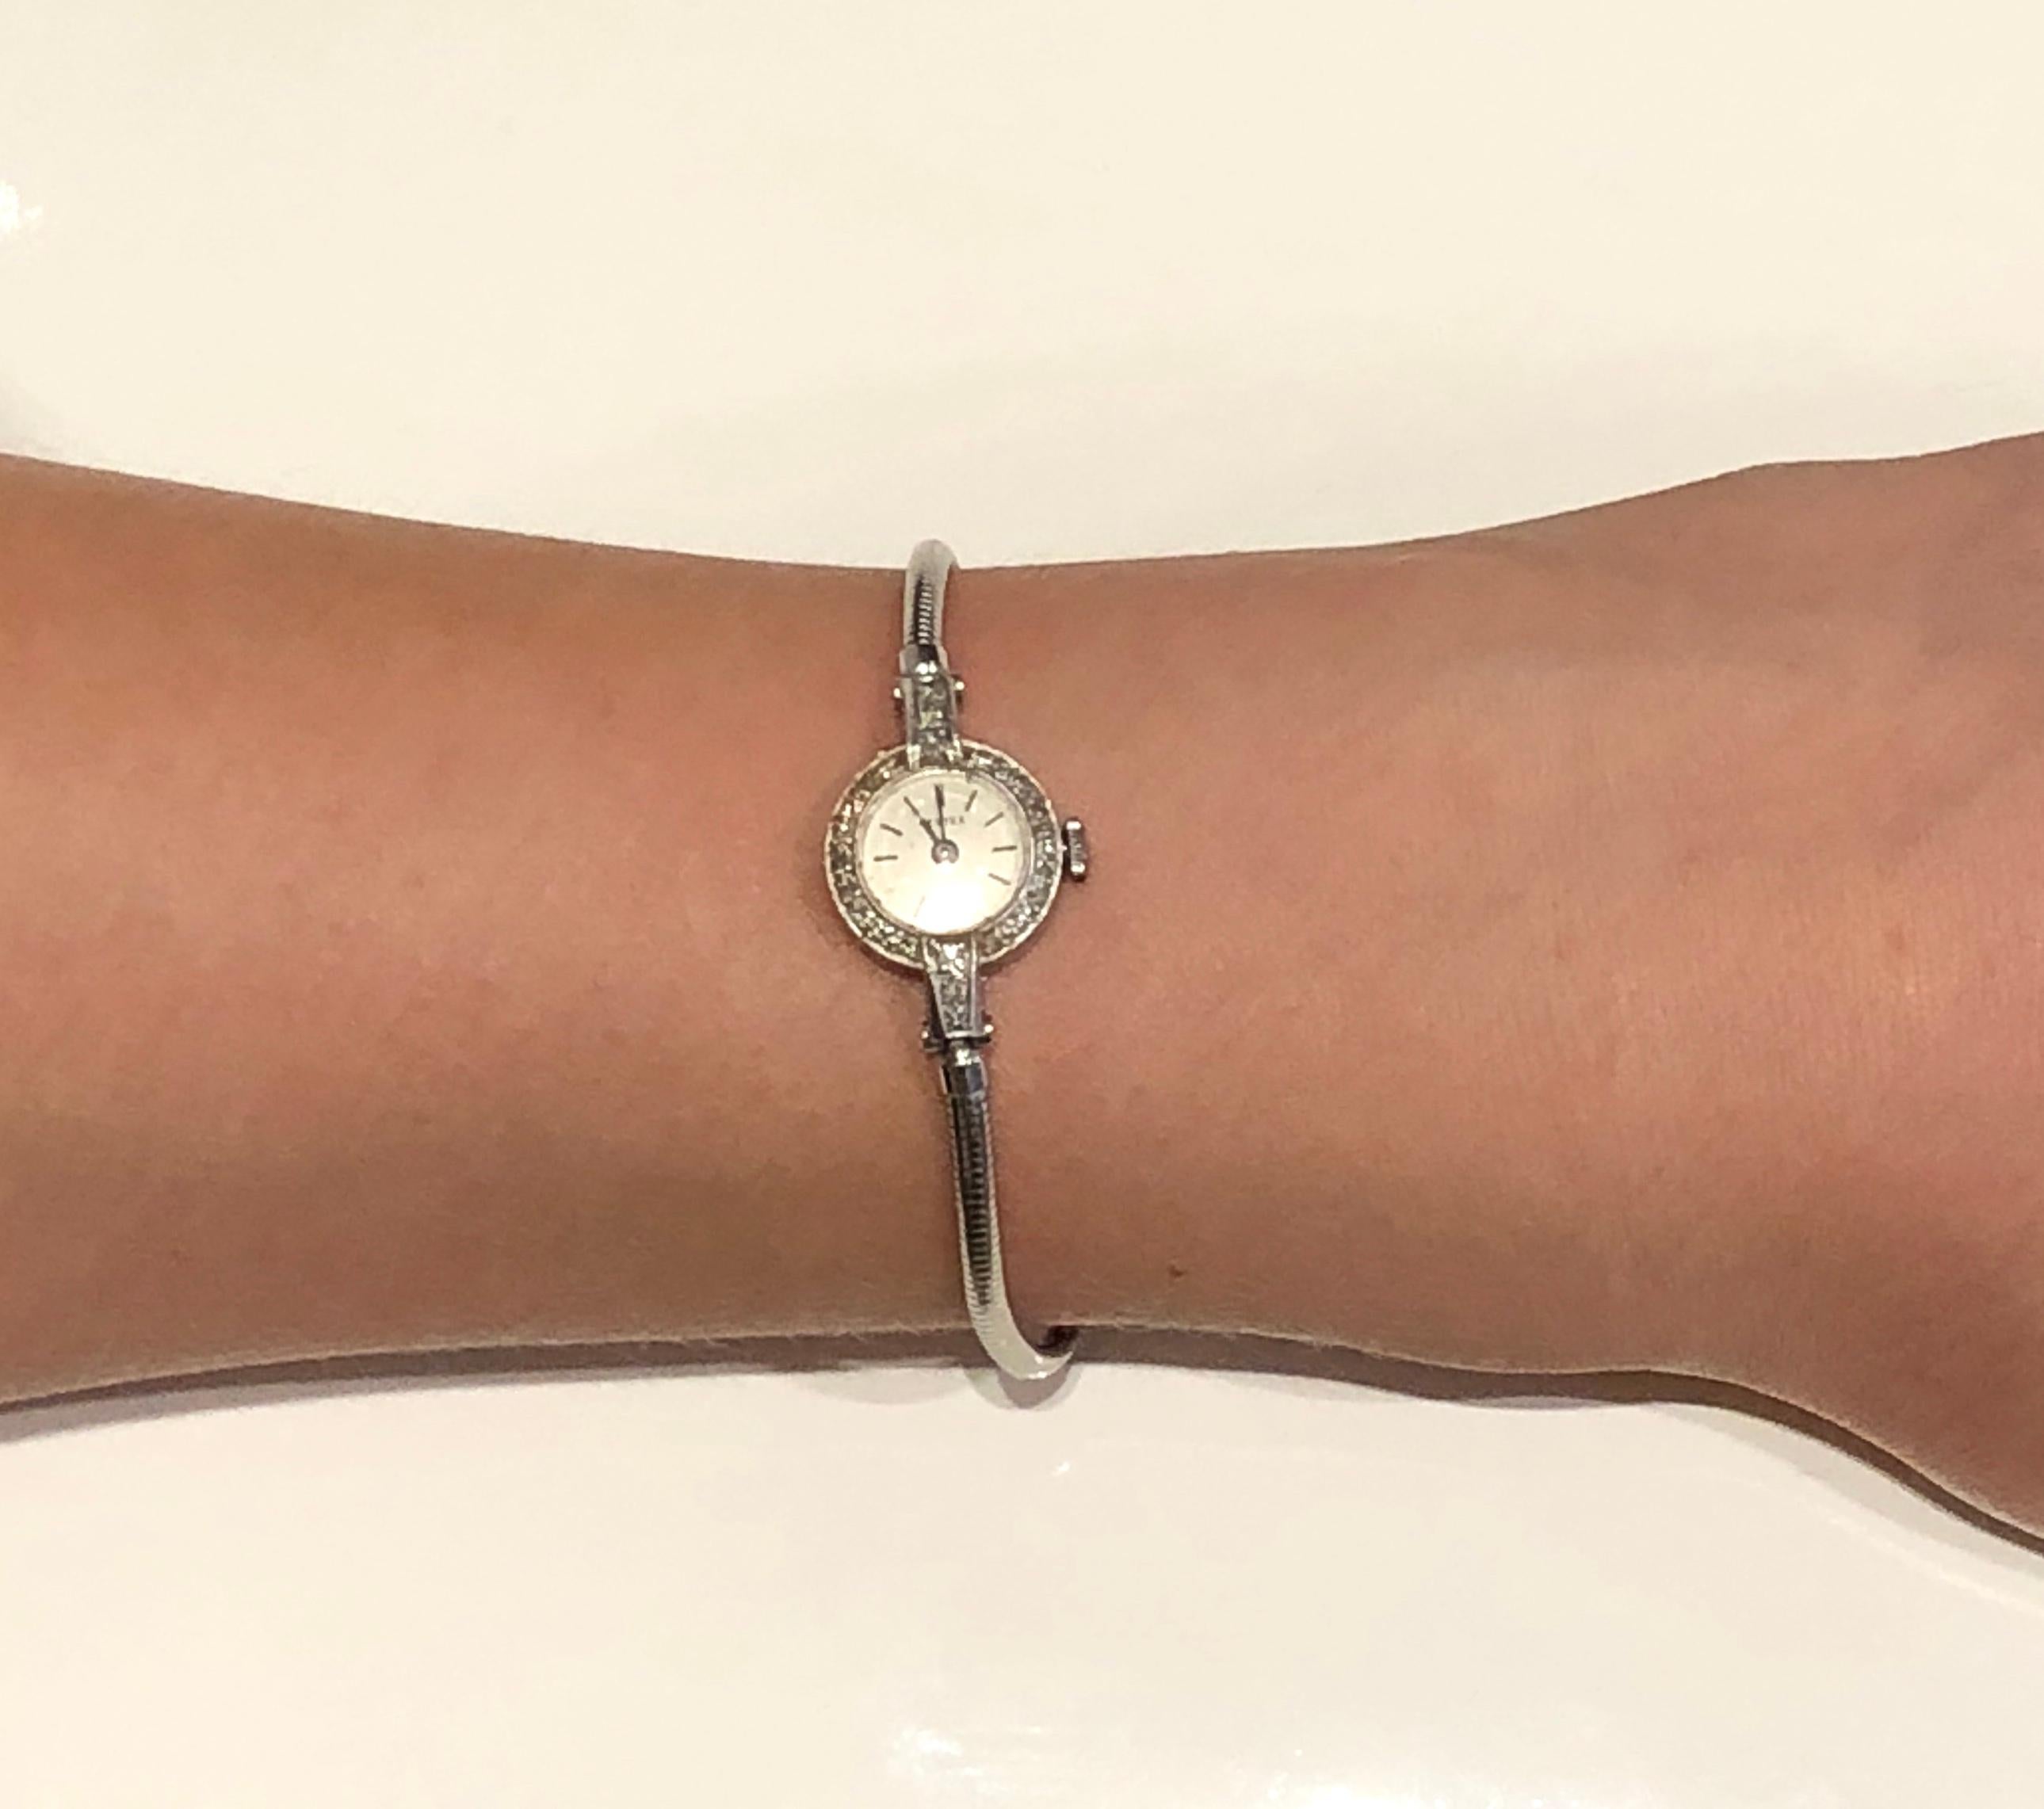 Montre-bracelet vintage pour dame en platine Vertex rose incrusté de diamants, signée et estampillée avec fermoir, longueur du poignet jusqu'à 7 pouces, 3 longueurs réglables sur le bracelet.